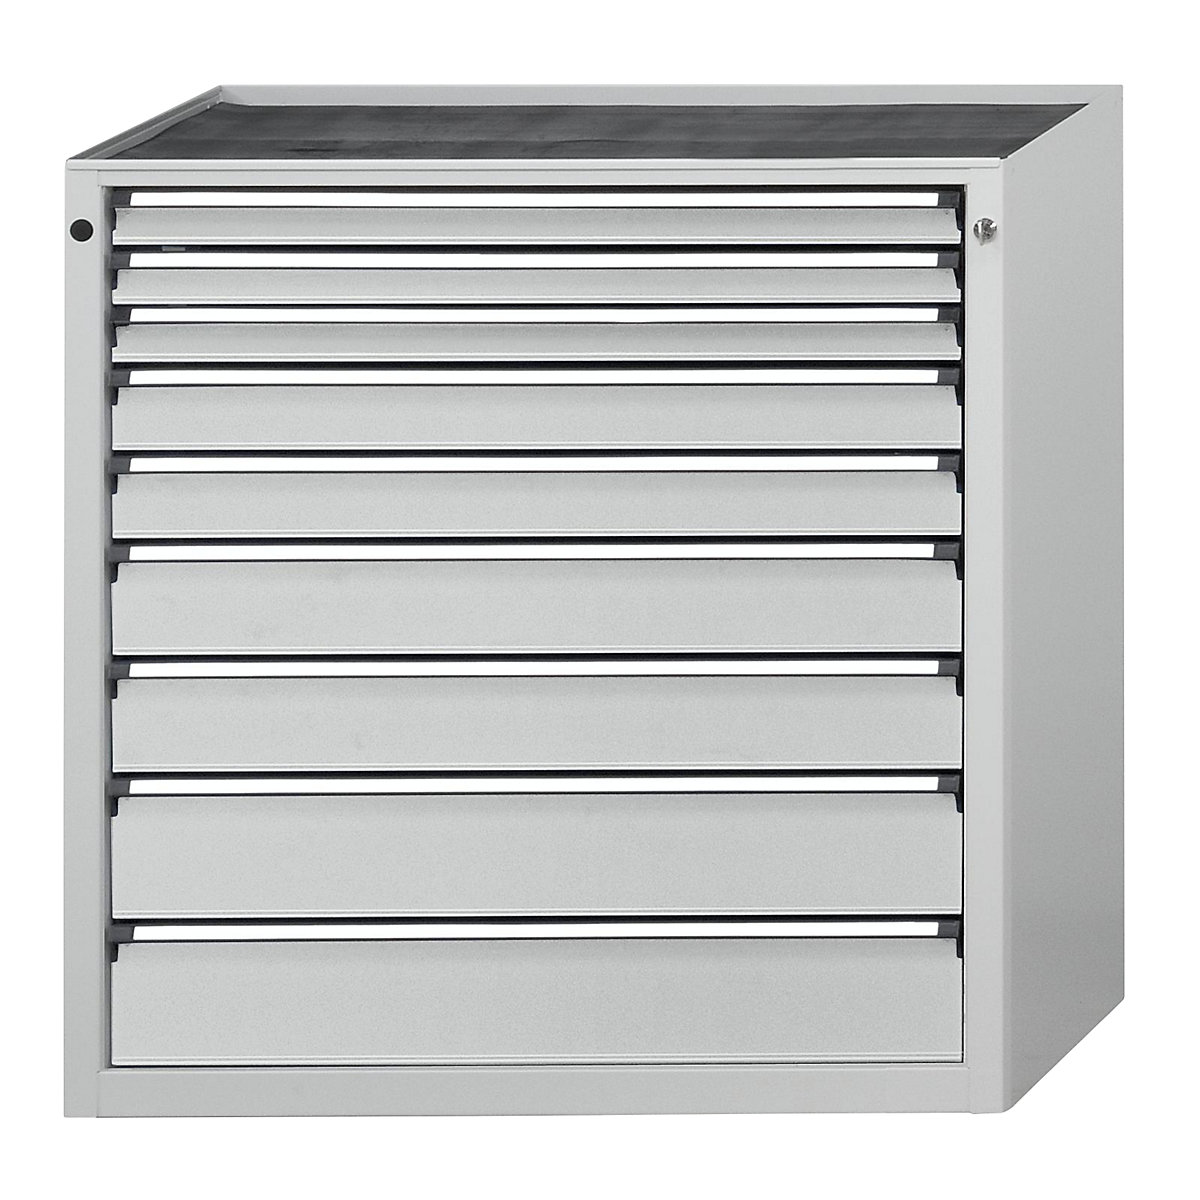 Zásuvková skříň – ANKE, š x h 910 x 675 mm, nosnost zásuvky 200 kg, 9 zásuvek, výška 1280 mm, čelo světle šedé